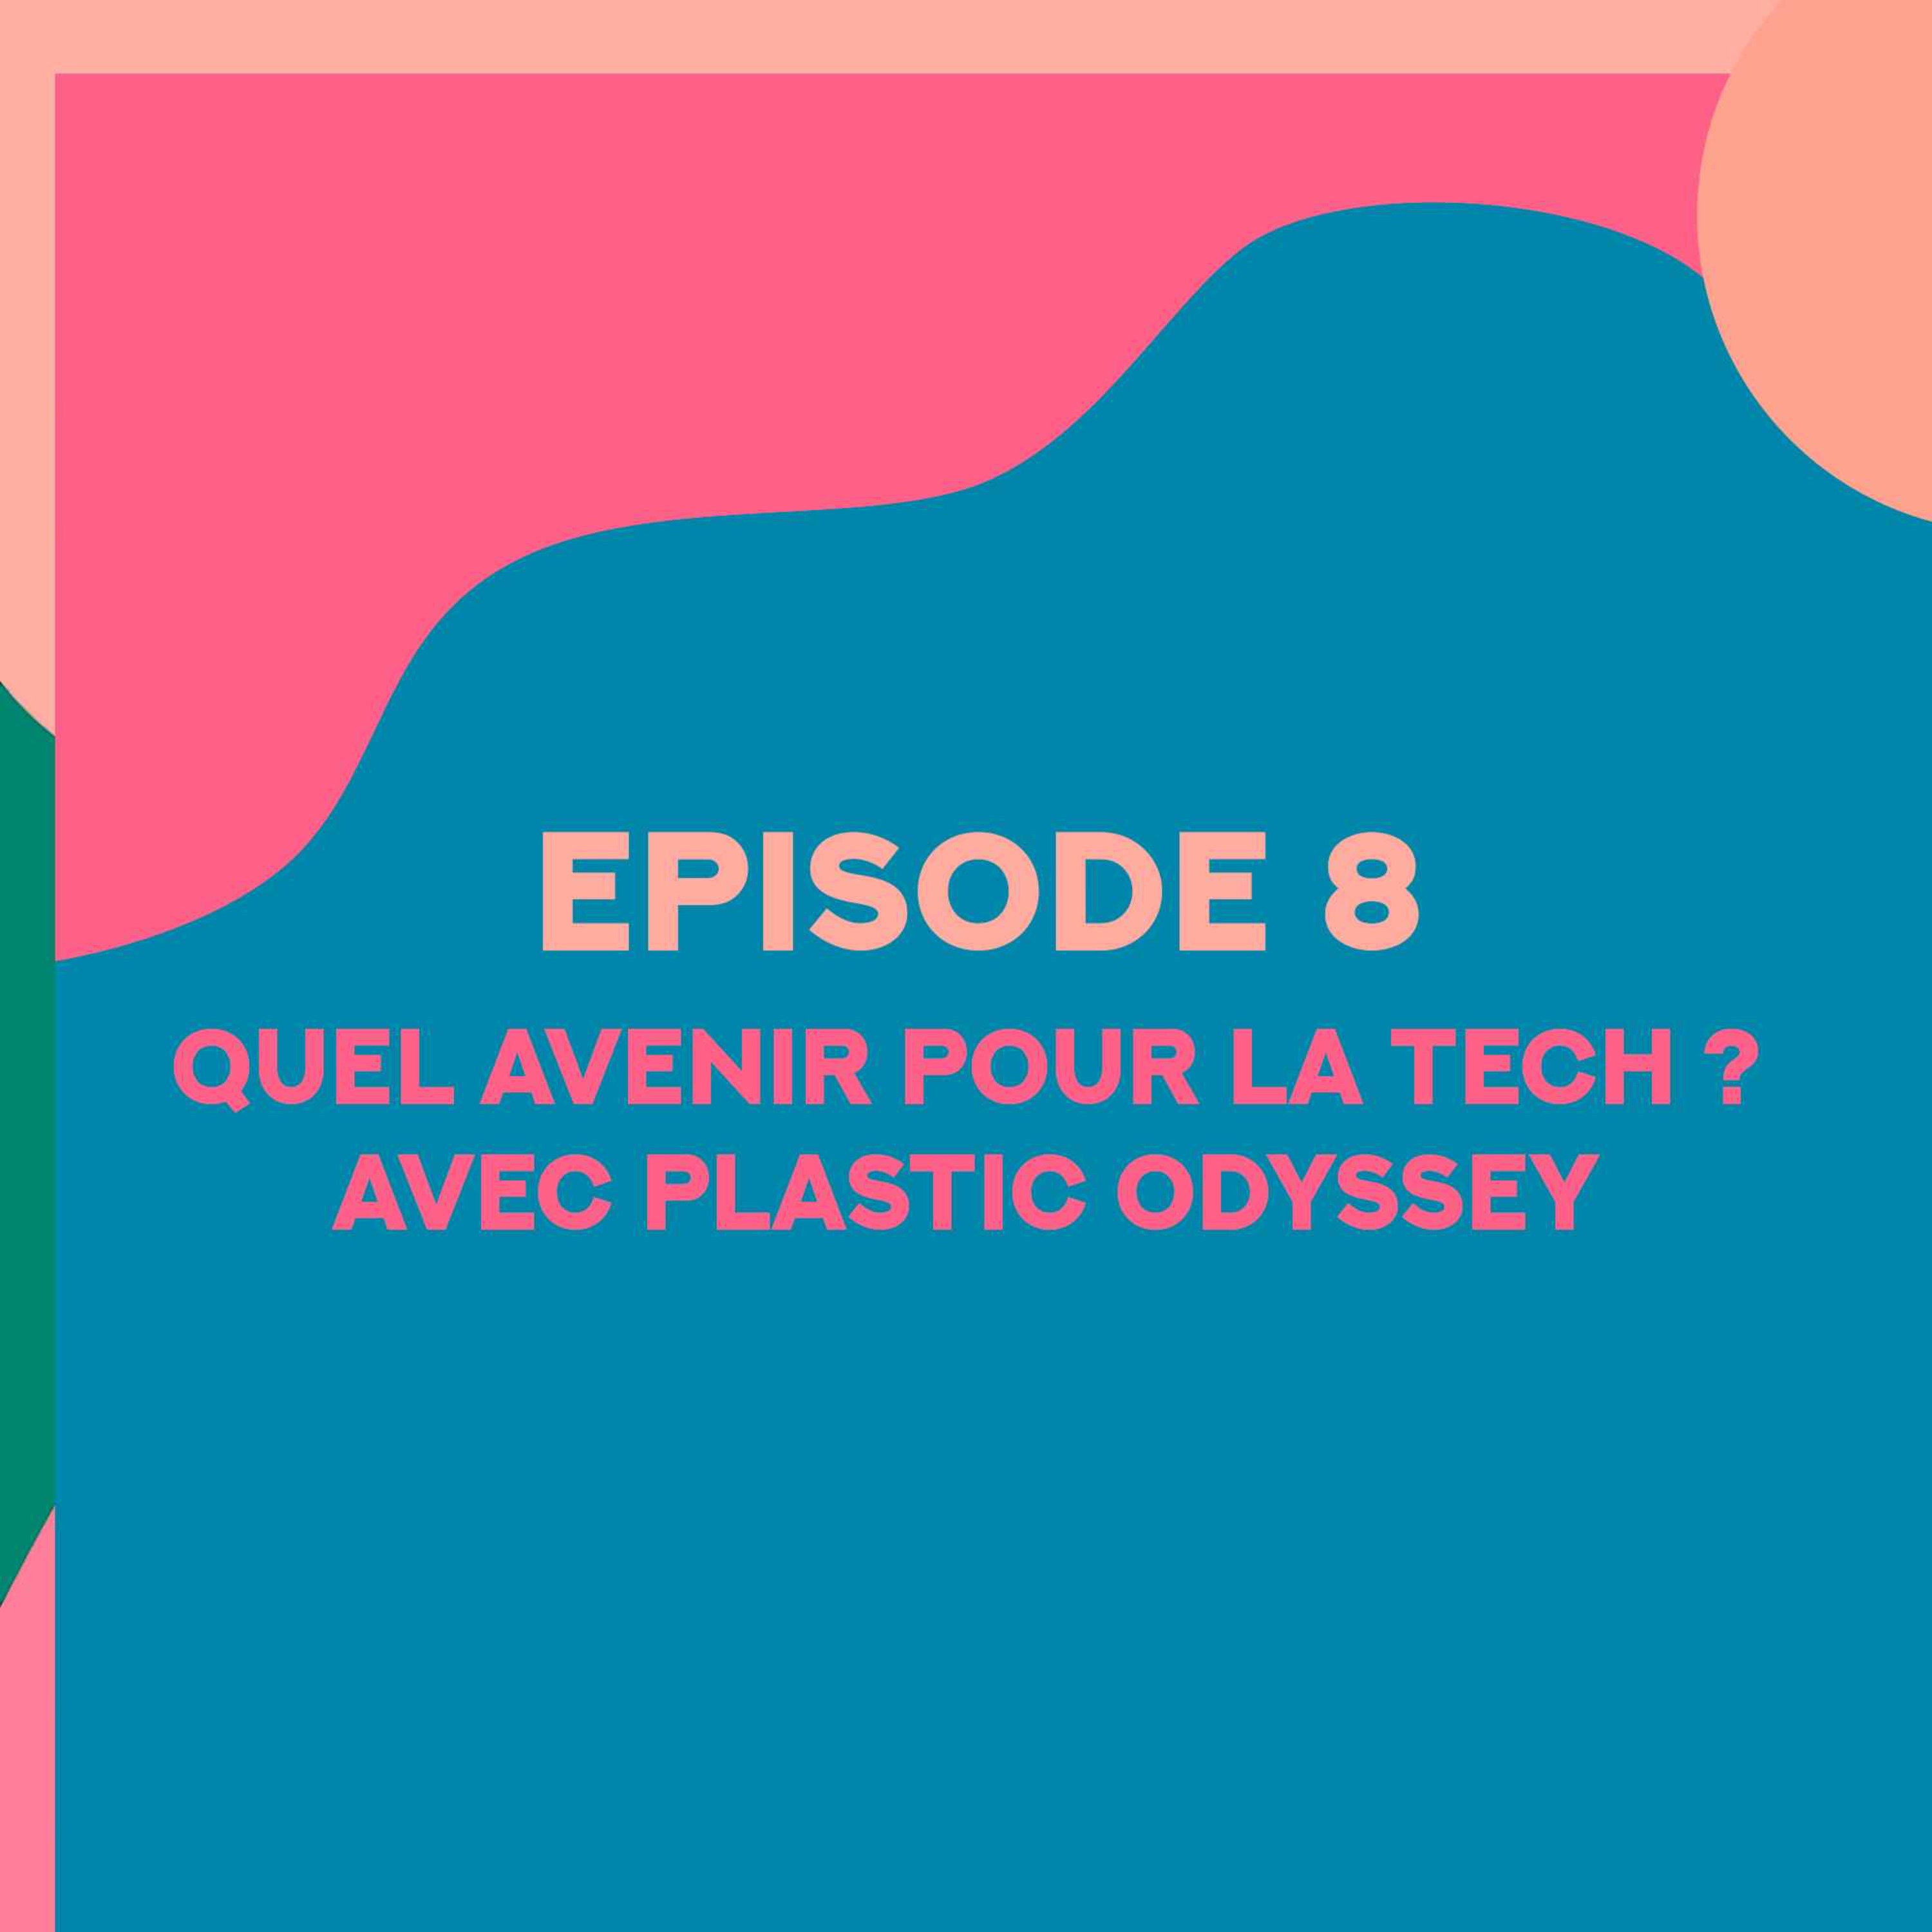 Quel avenir pour la tech avec Plastic Odyssey